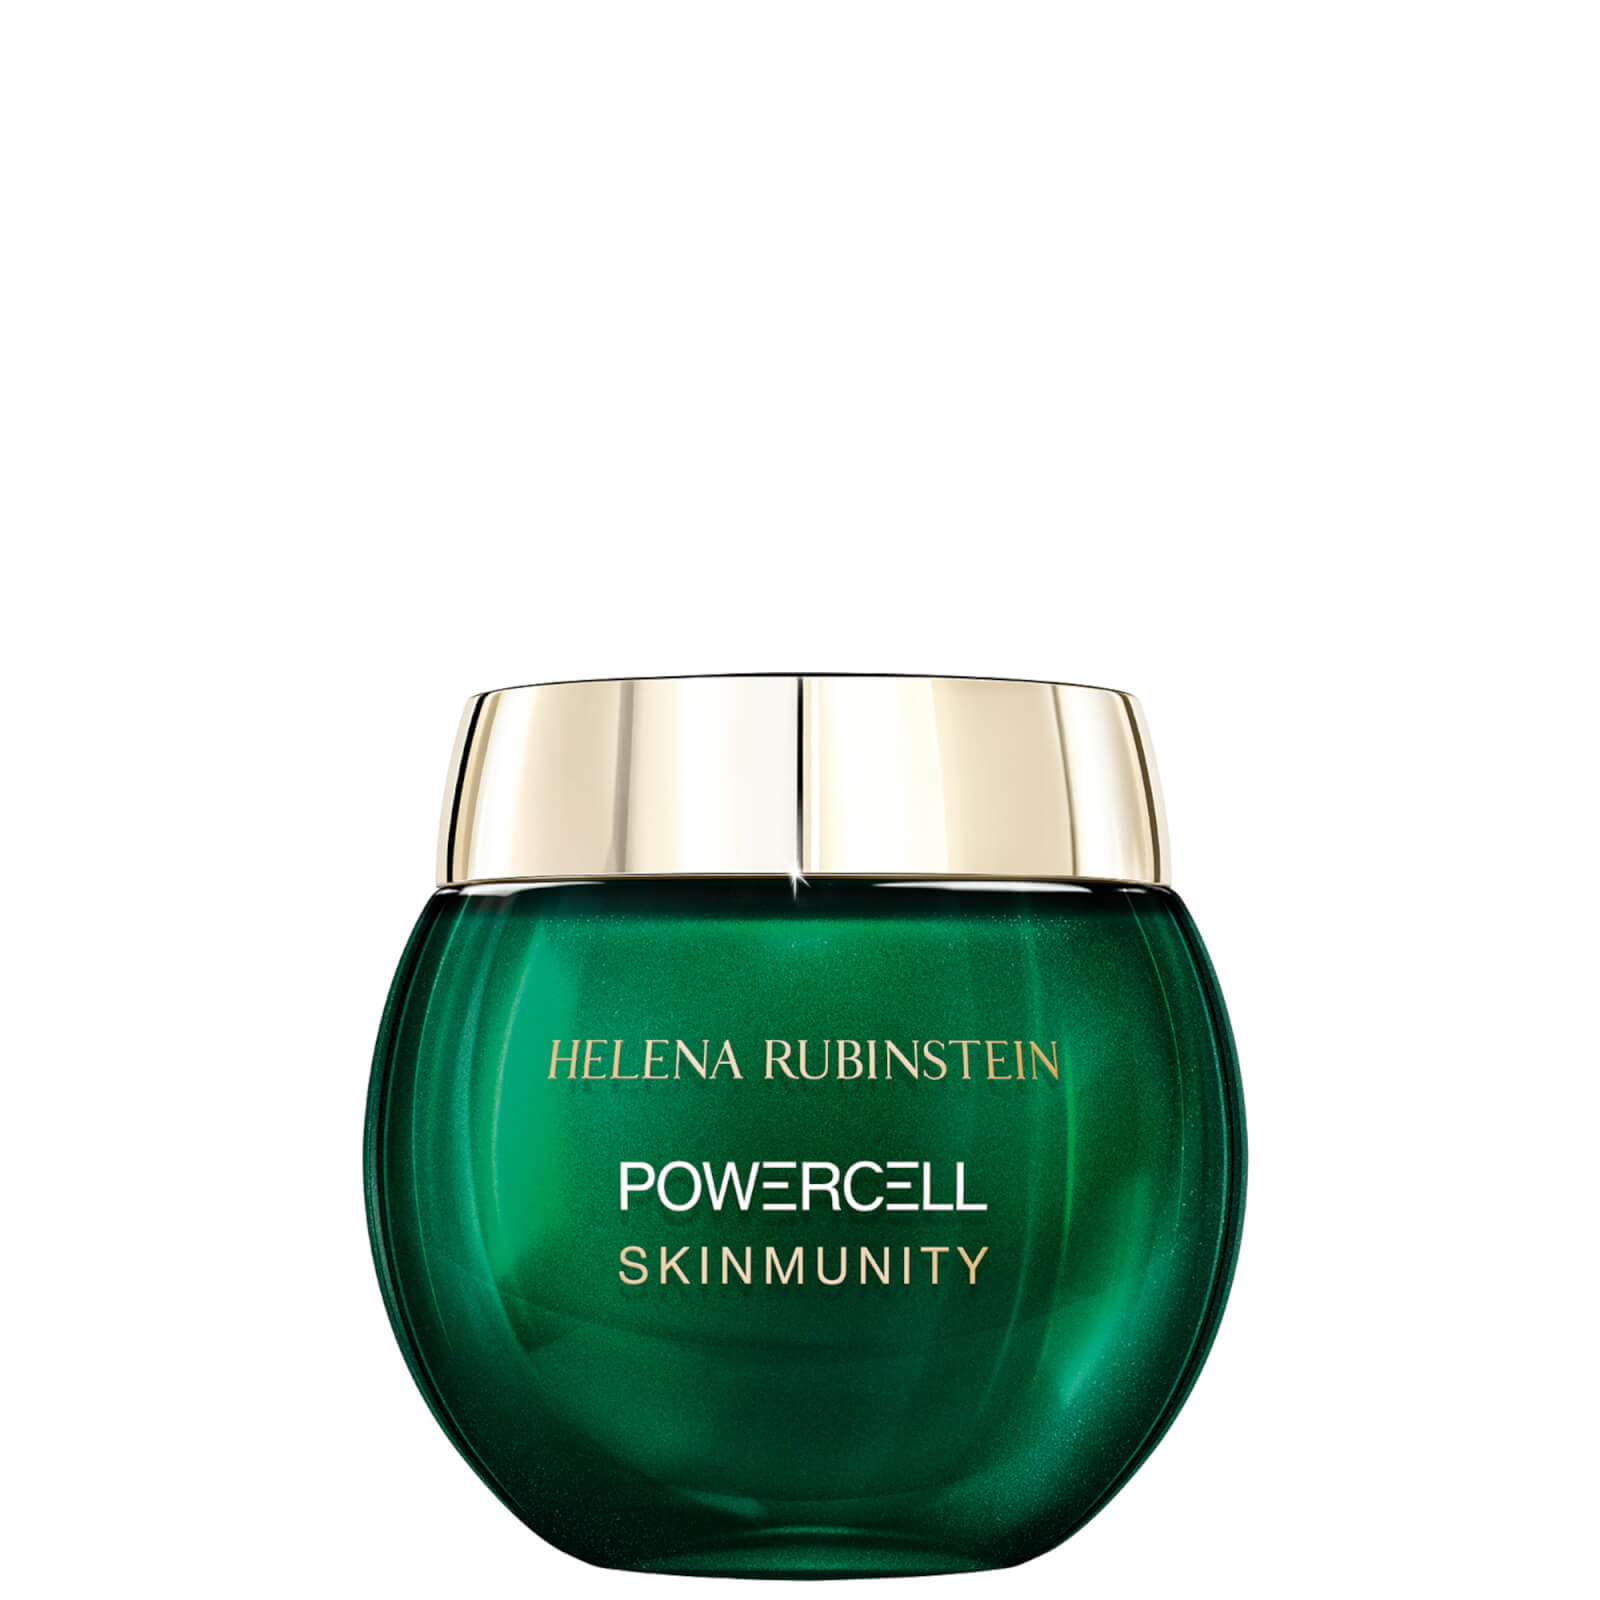 Image of Helena Rubinstein Powercell Skinmunity Cream 50ml